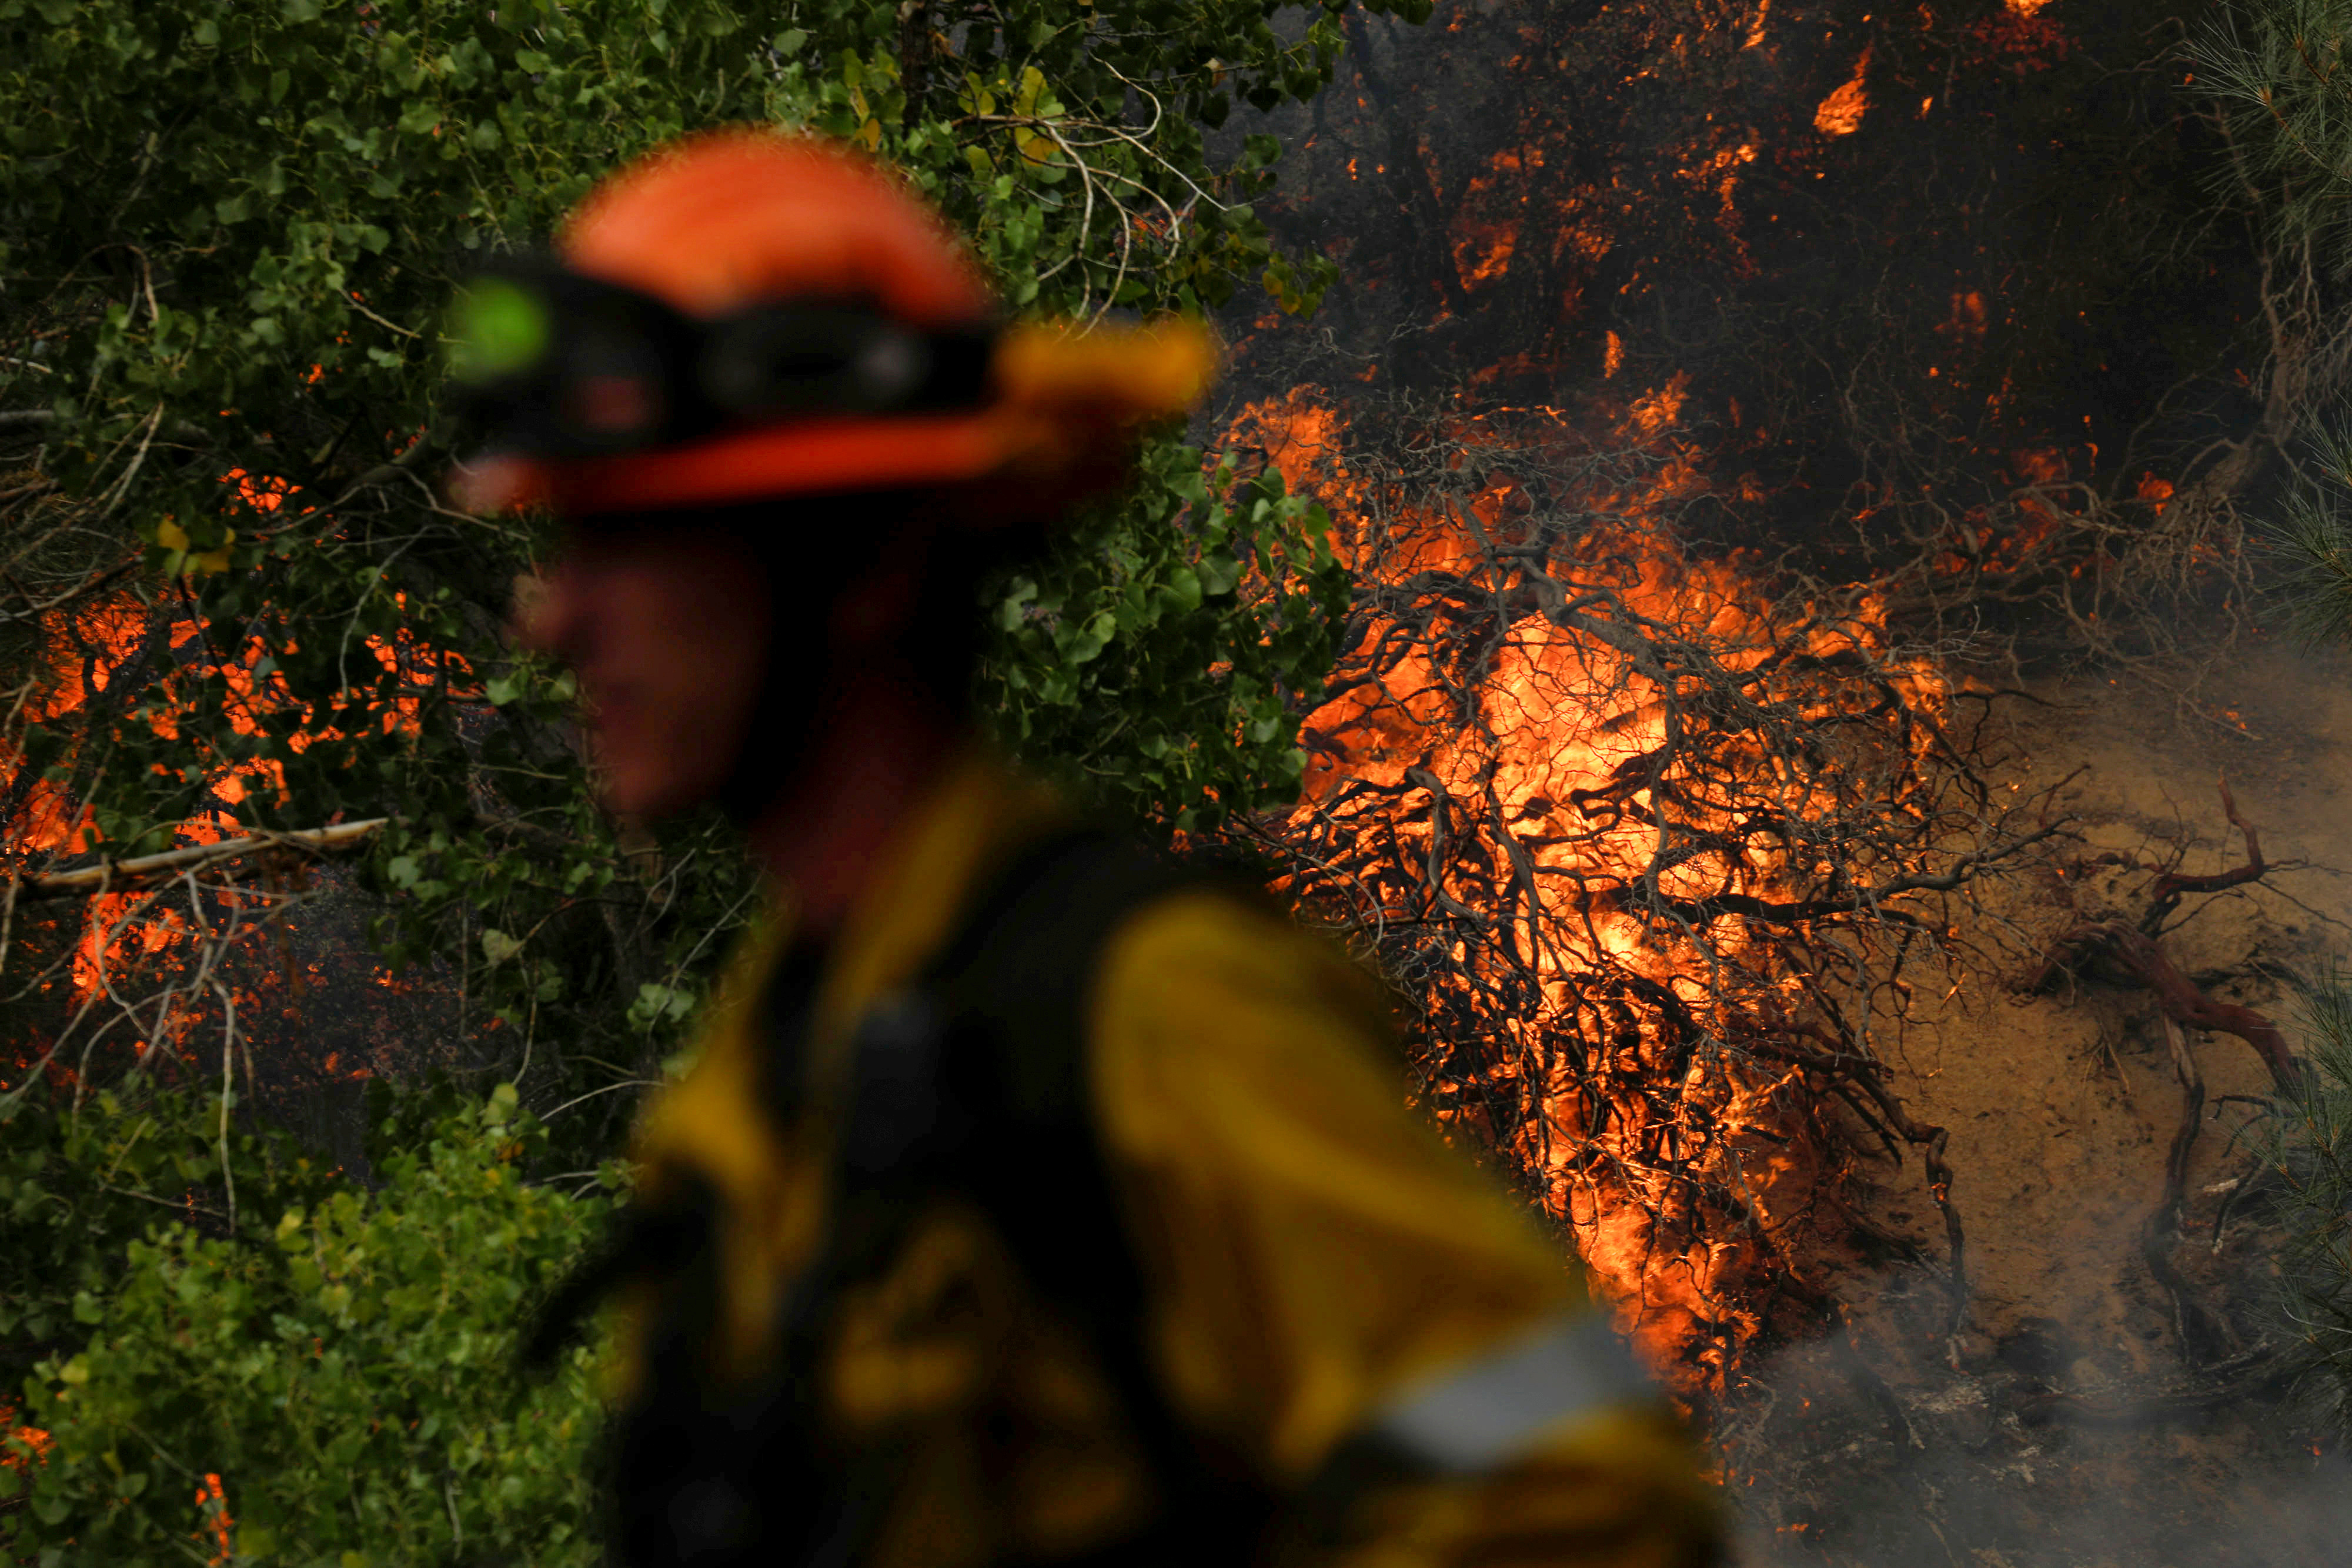 Un bombero monitorea un foco puntual mientras un incendio forestal de rápido movimiento, llamado Lake Fire, arde en un área montañosa del Bosque Nacional Ángeles al norte de Los Ángeles, California (Reuters)